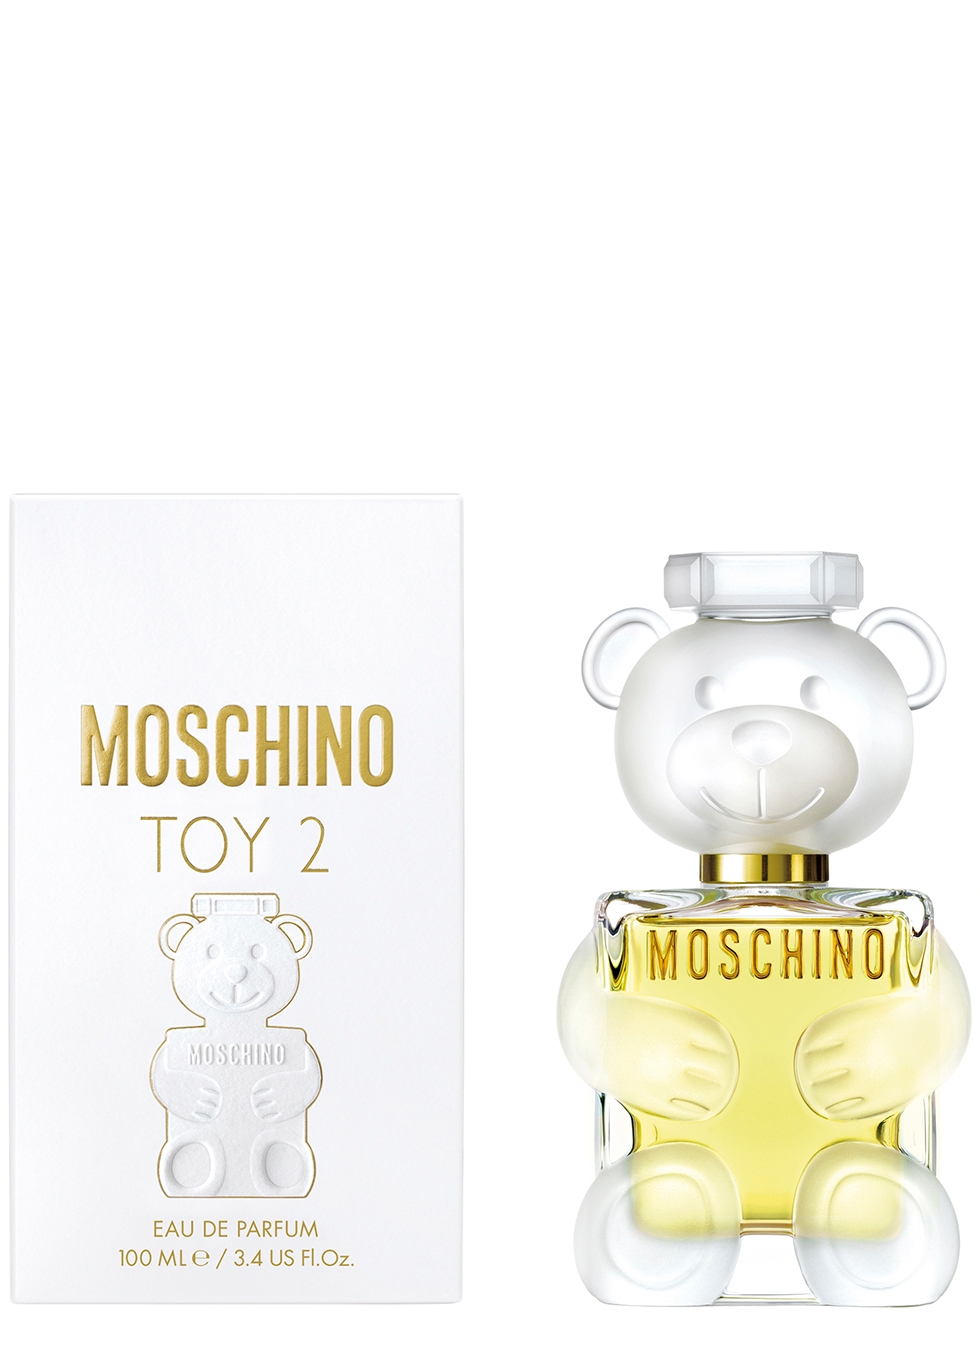 Moschino Toy 2 Eau de Parfum 100ml 